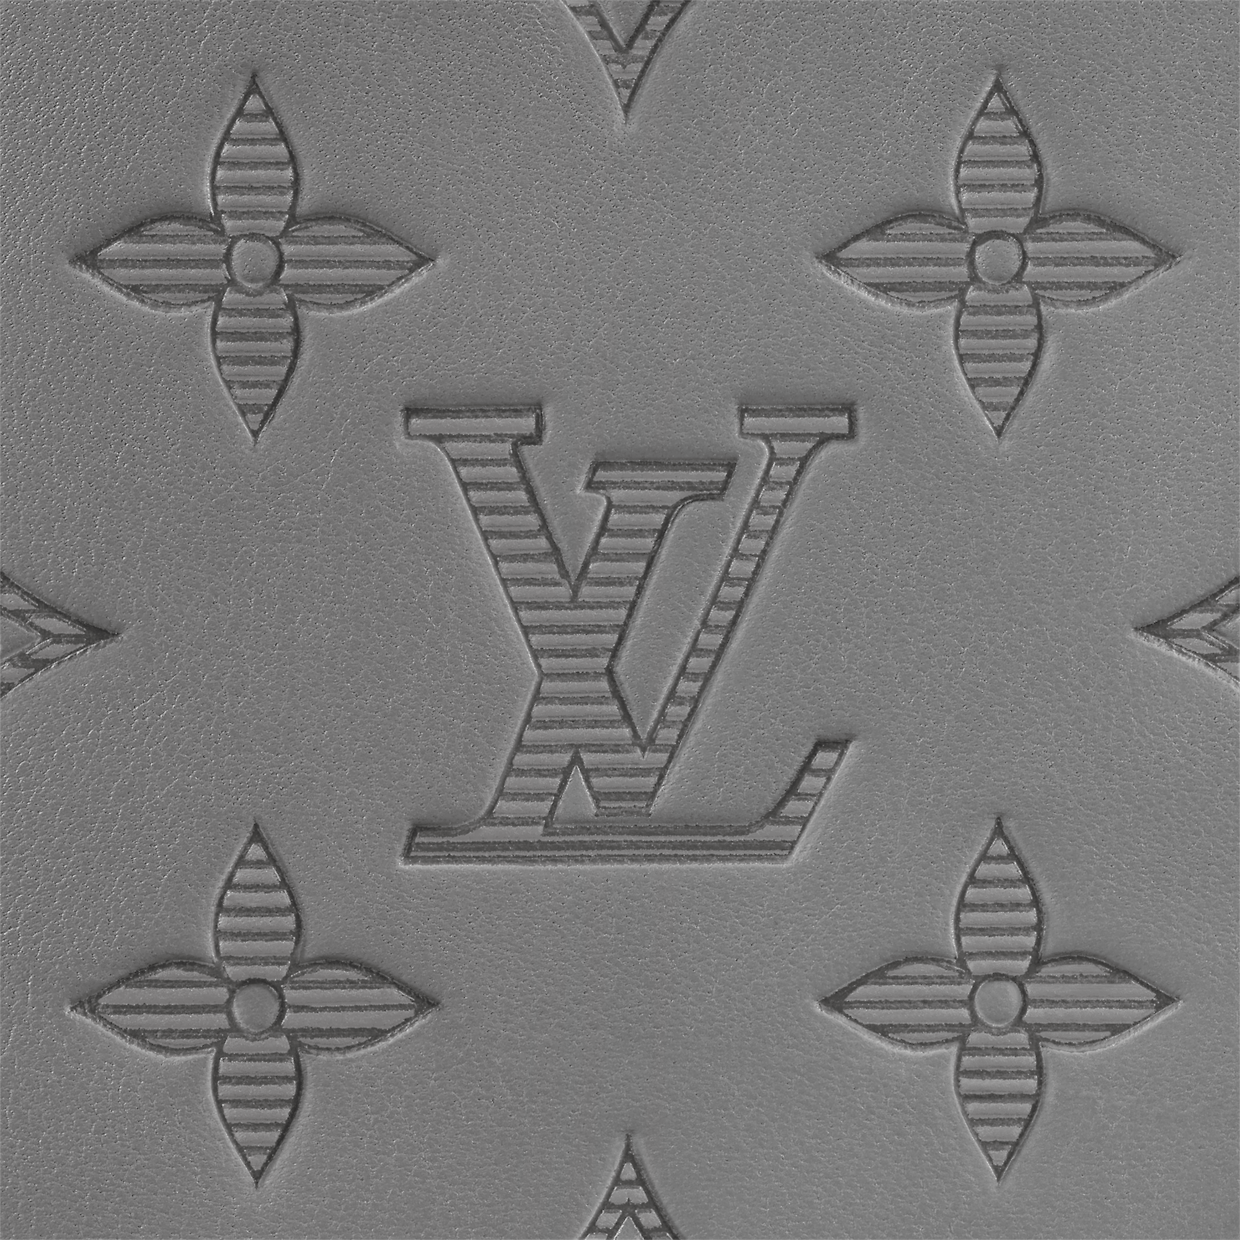 Ví nam Louis Vuitton M81383 màu xám anthracite đa ngăn sẽ là món phụ kiện không thể thiếu trong tủ đồ của bạn. Thiết kế bằng da cao cấp và đường nét tinh tế, ví nam Louis Vuitton sẽ mang đến cho bạn sự sang trọng và hiện đại. Hãy sở hữu ngay ví nam Louis Vuitton M81383 để tôn lên phong cách của bạn!